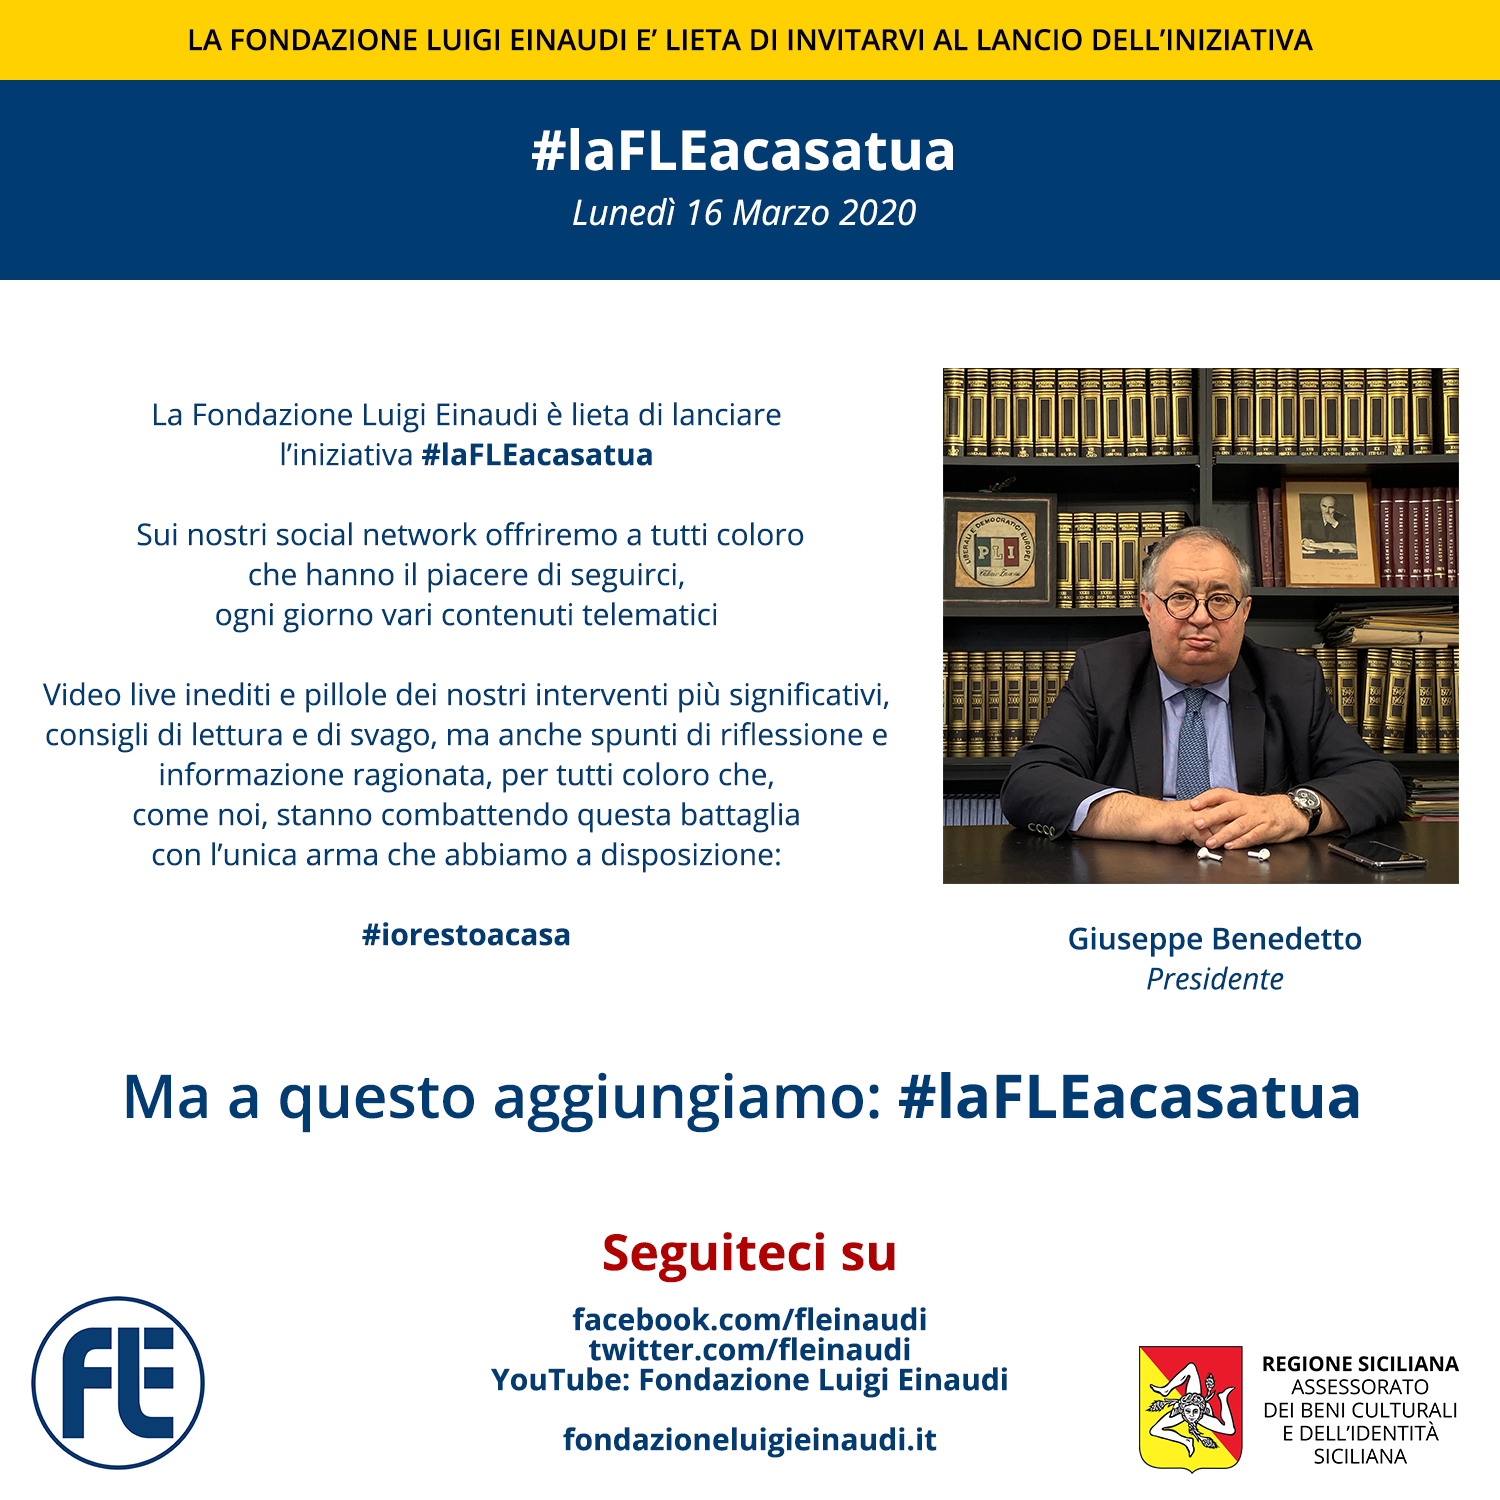 Lancio dell’iniziativa #laFLEacasatua